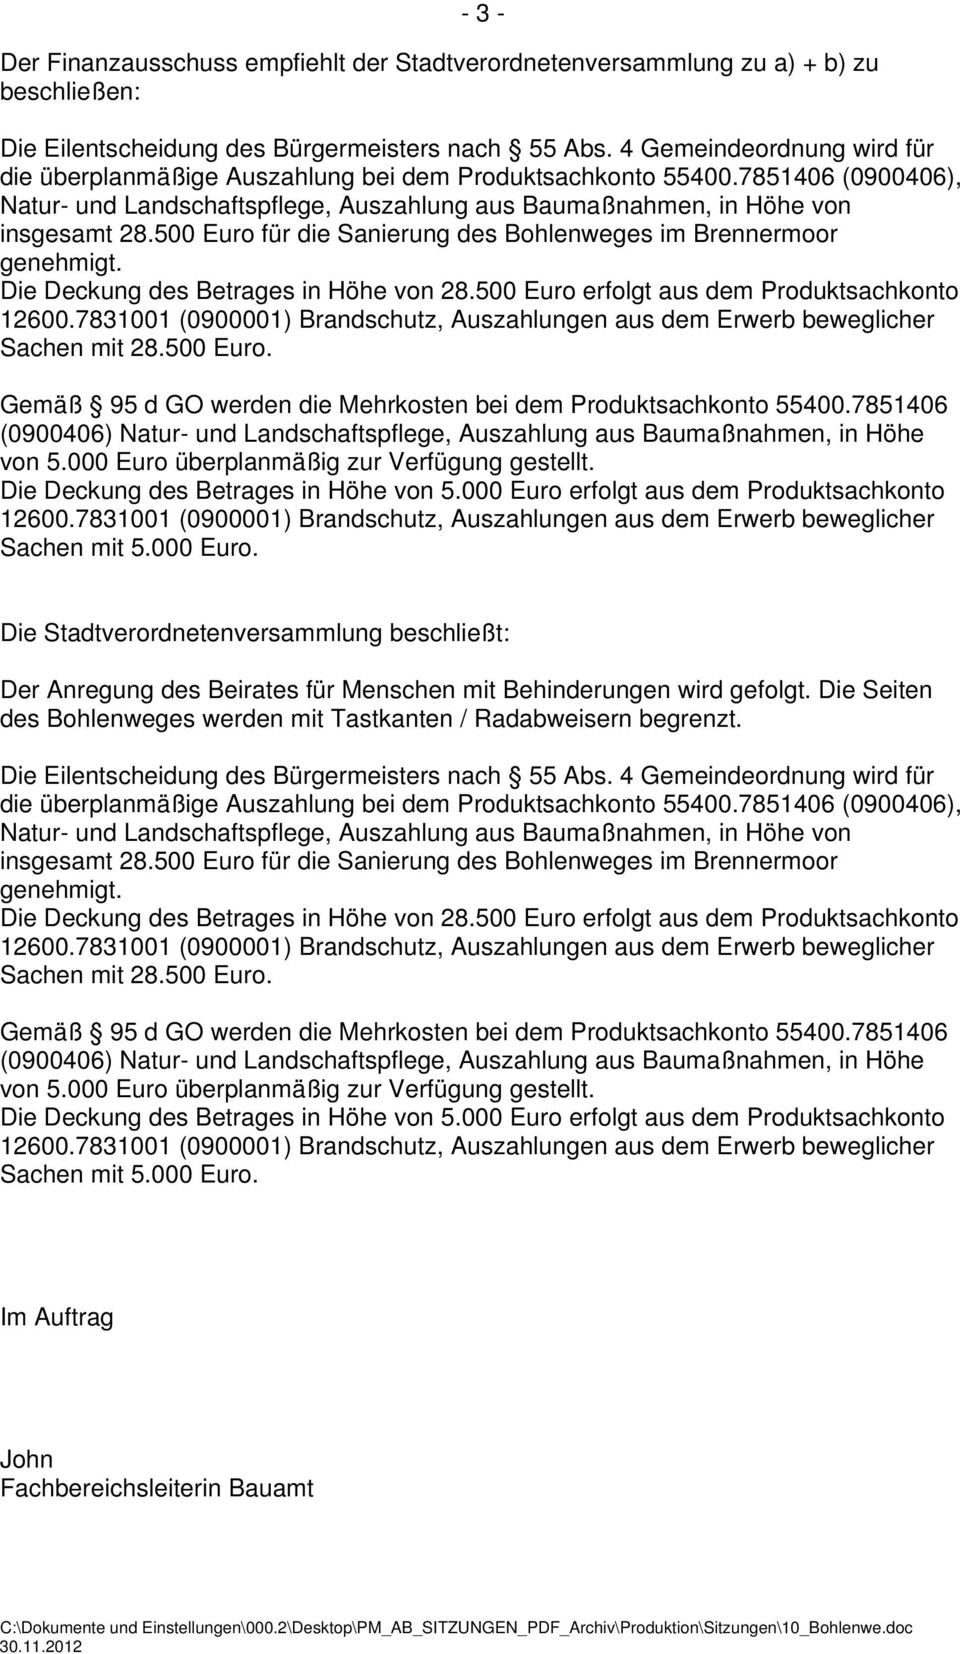 500 Euro für die Sanierung des Bohlenweges im Brennermoor genehmigt. Die Deckung des Betrages in Höhe von 28.500 Euro erfolgt aus dem Produktsachkonto 12600.